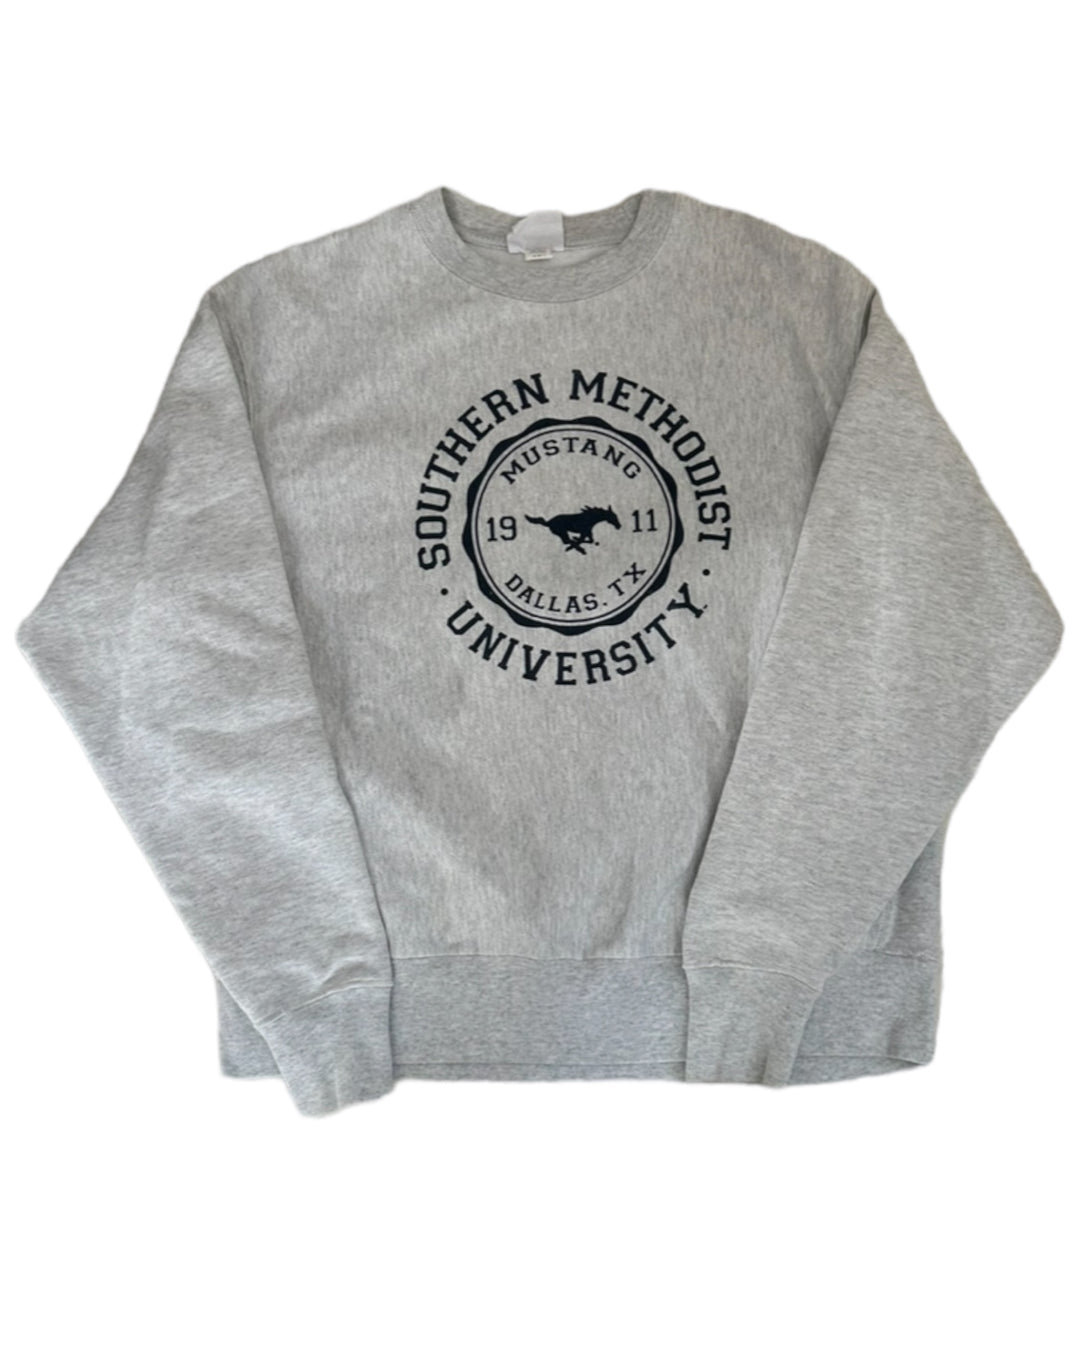 SMU Vintage Sweatshirt